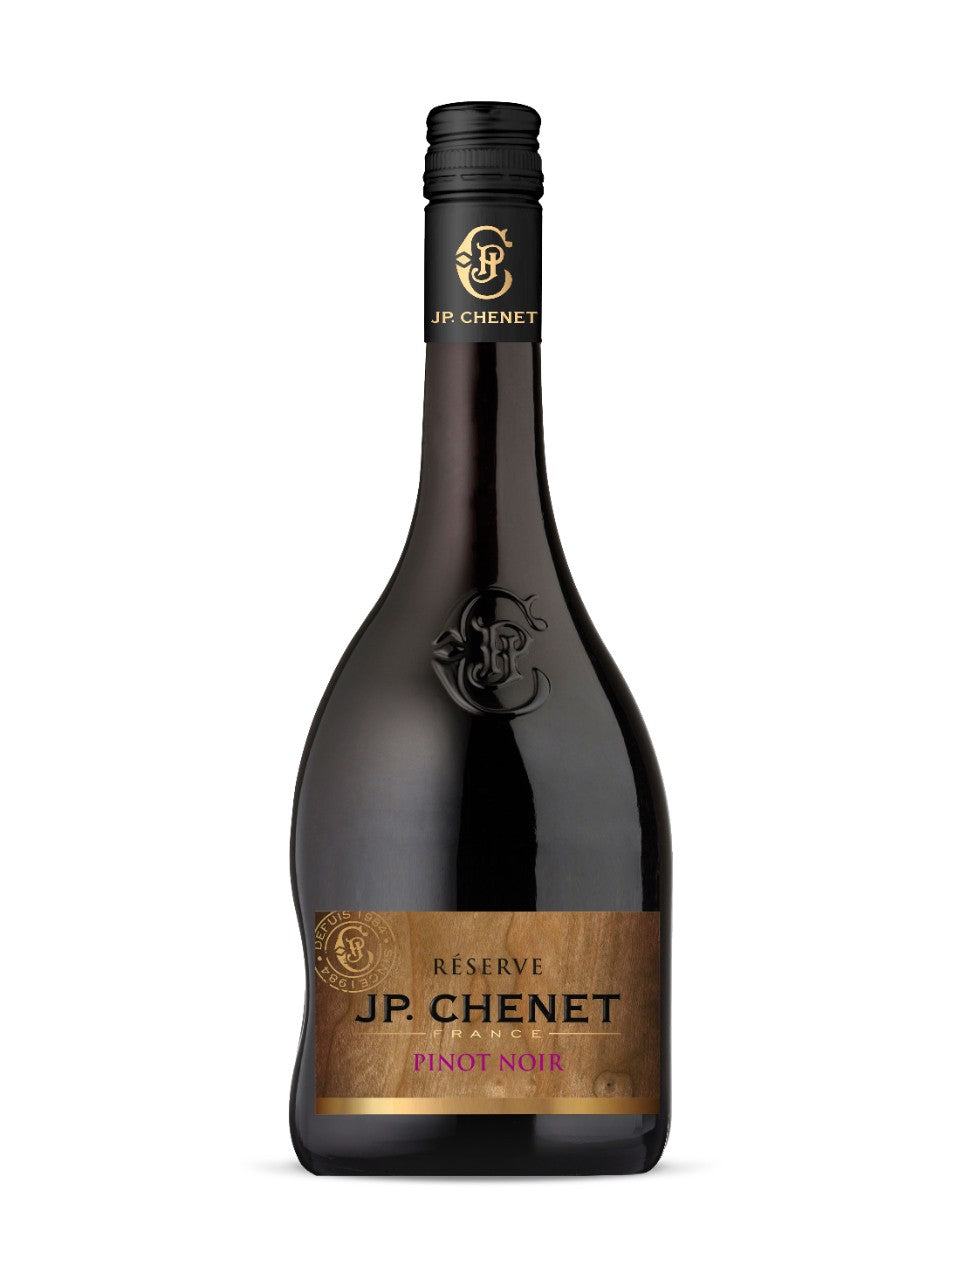 J.P. Chenet Pinot Noir Reserve VdFrance 750 ml bottle